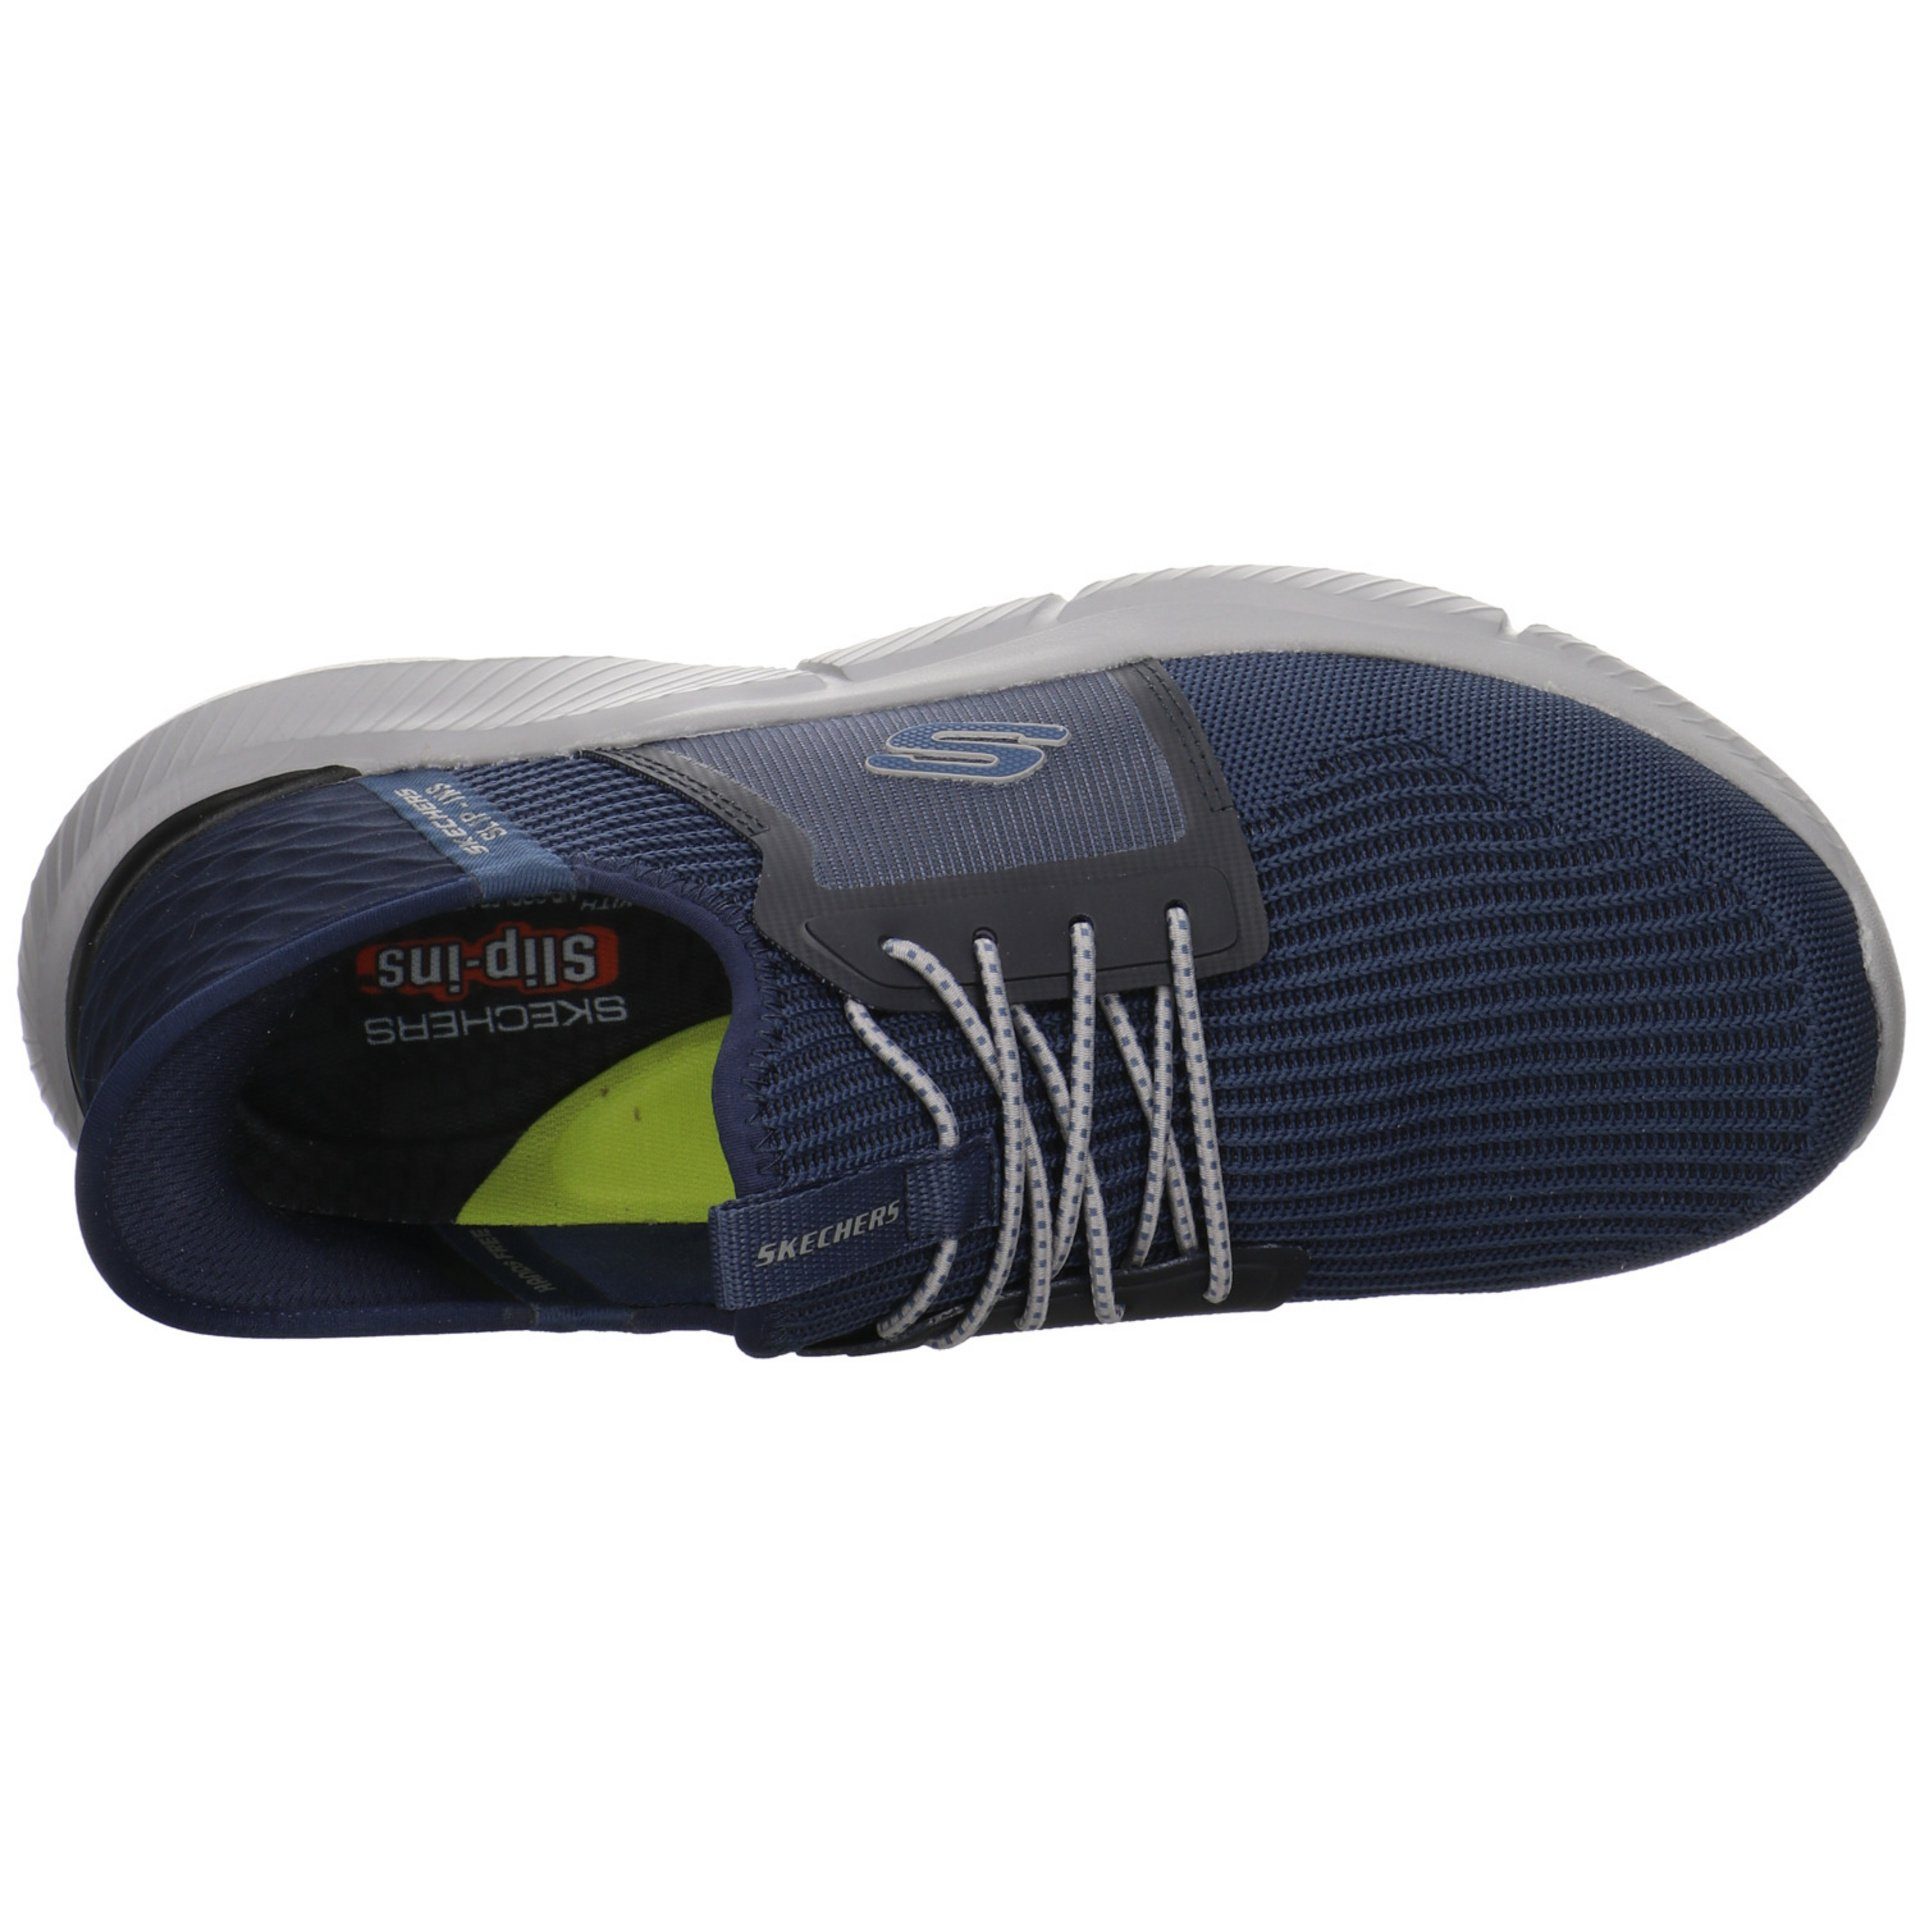 Schuhe Slipper Synthetik Skechers Slip-On Sneaker dunkel blau Herren